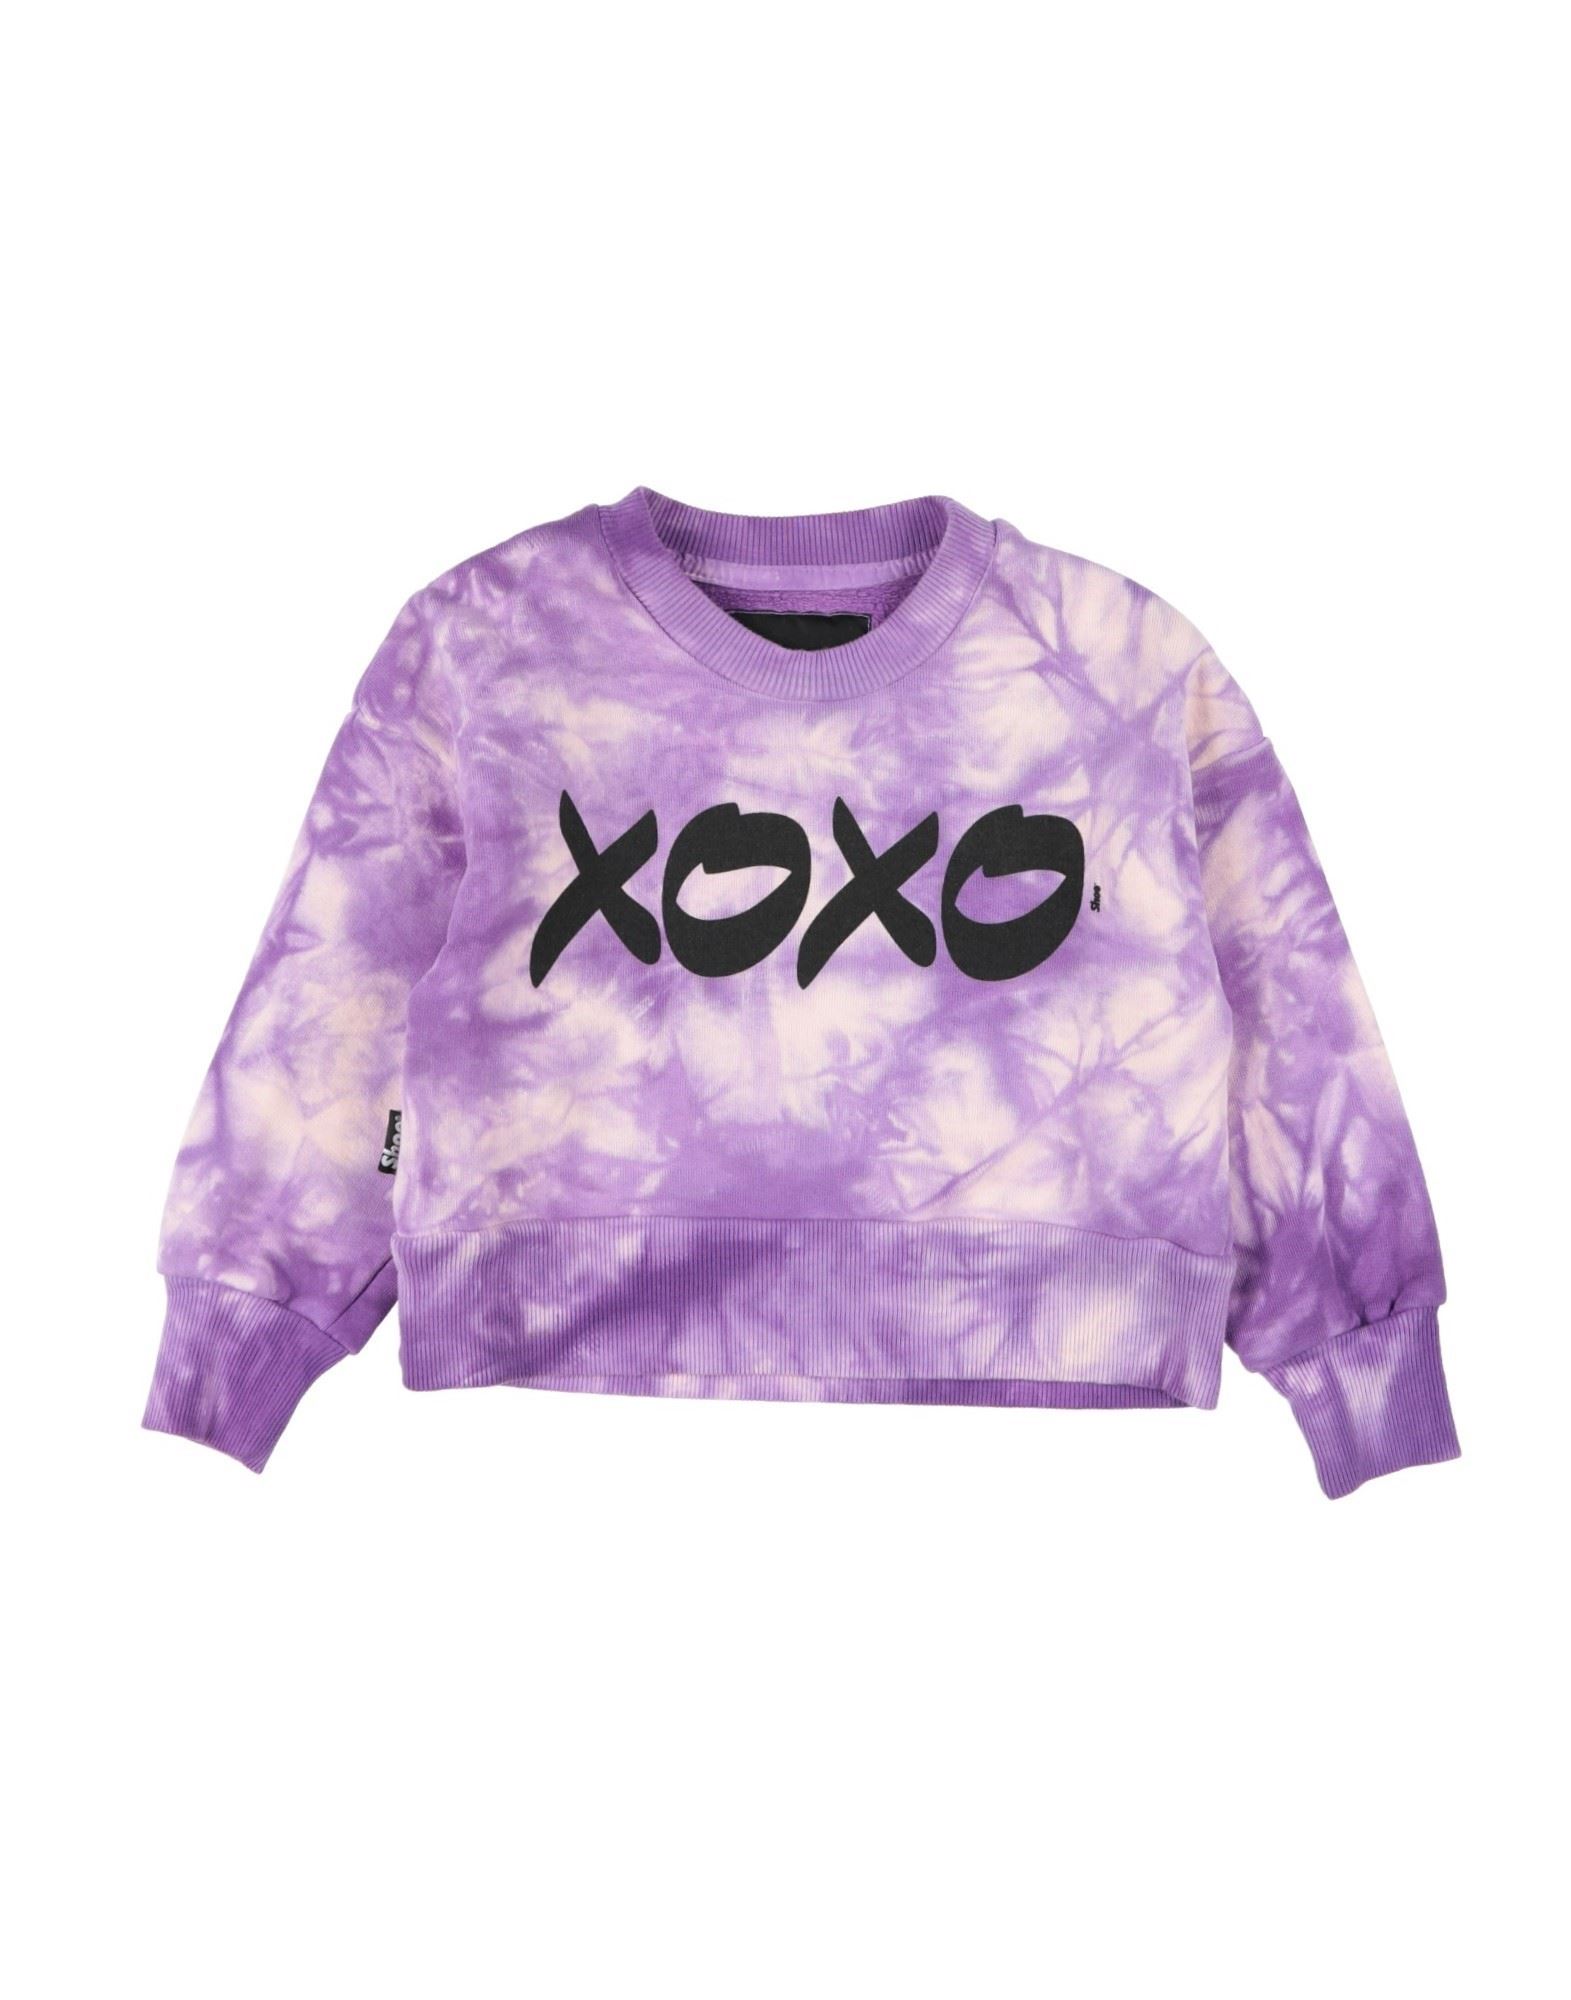 SHOE® Sweatshirt Kinder Violett von SHOE®